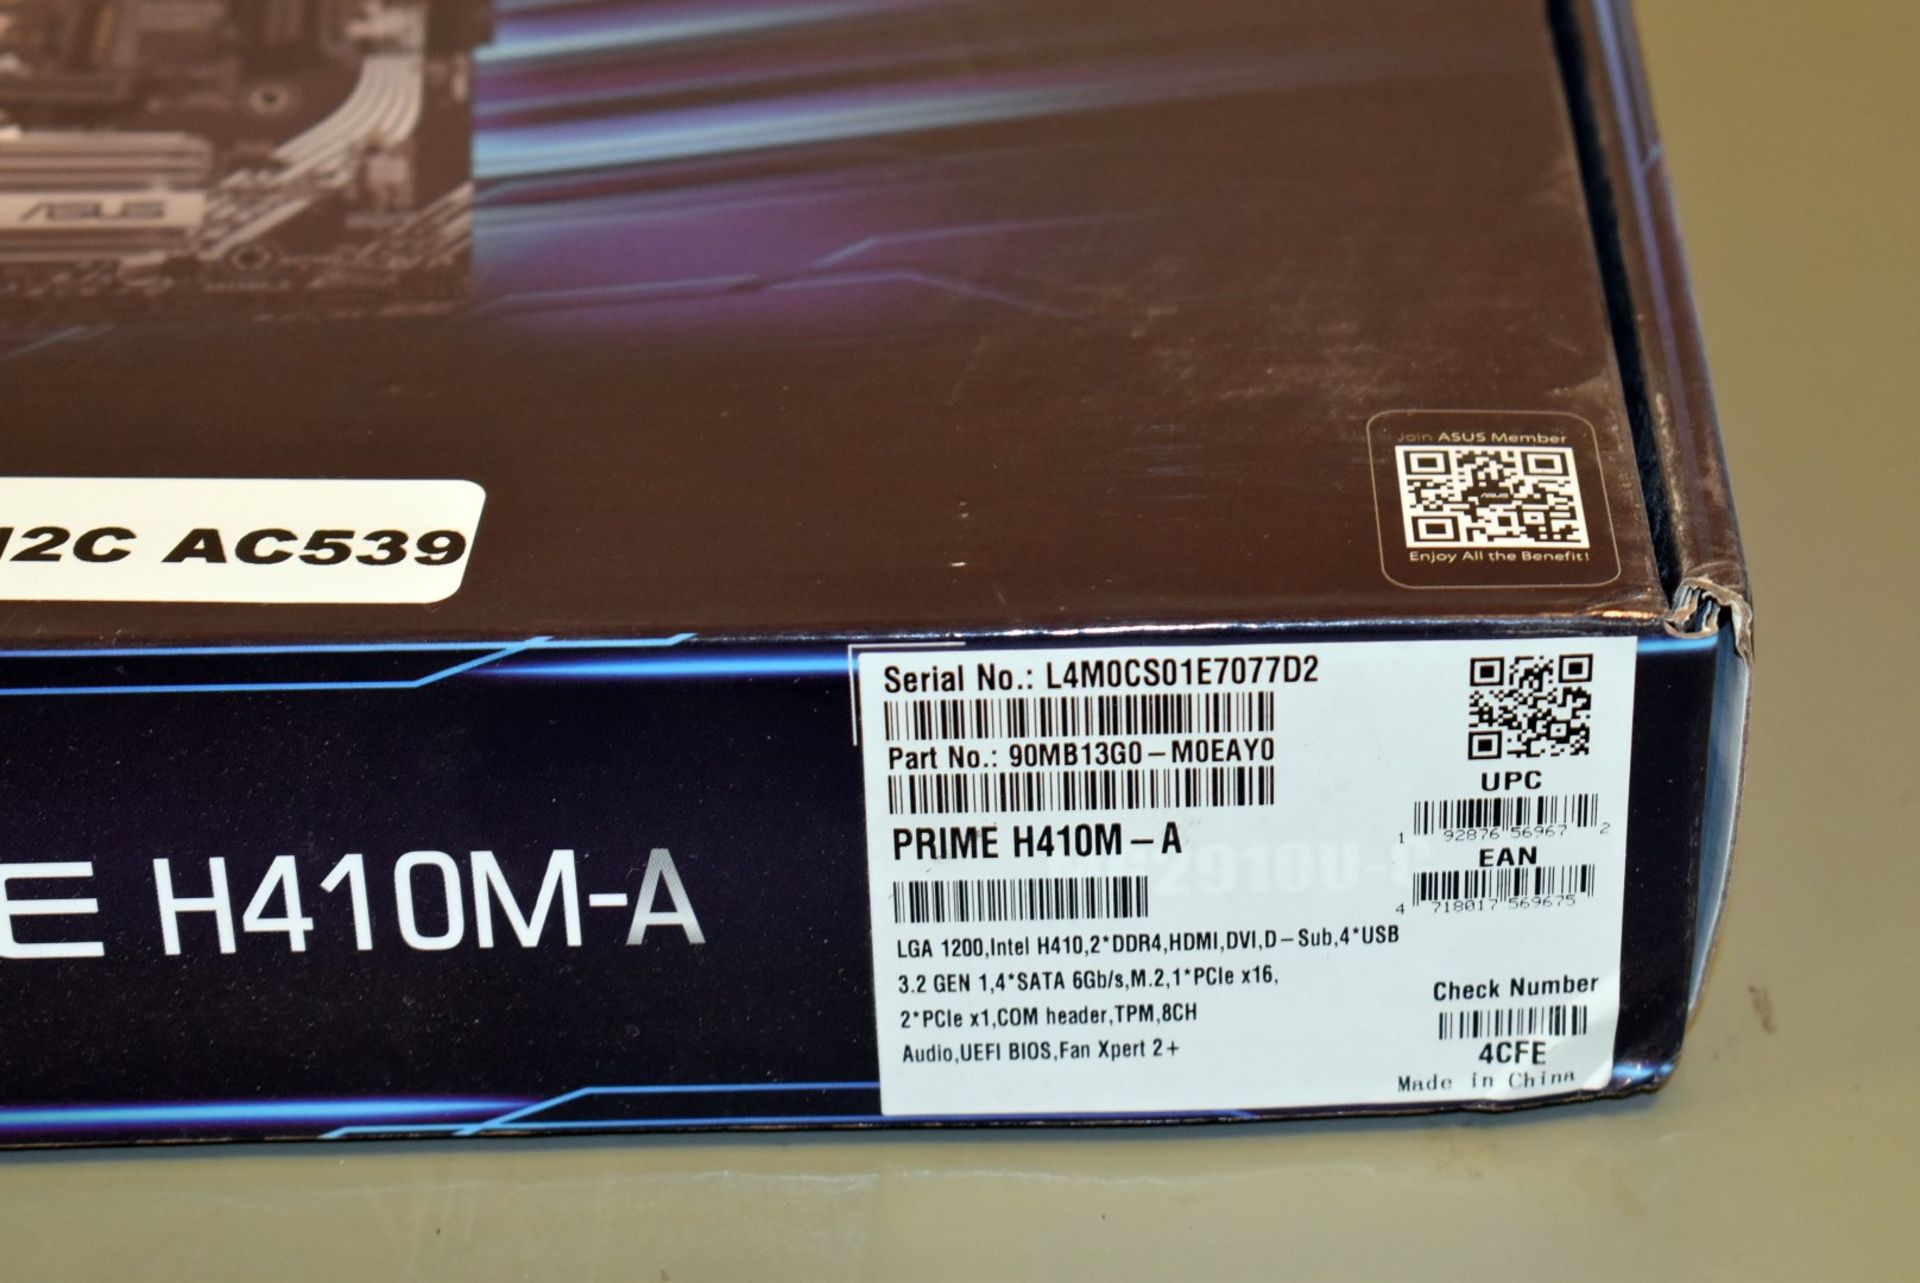 1 x Asus Prime H410M-A LGA1200 Intel Motherboard - Sample Motherboard - Image 4 of 7